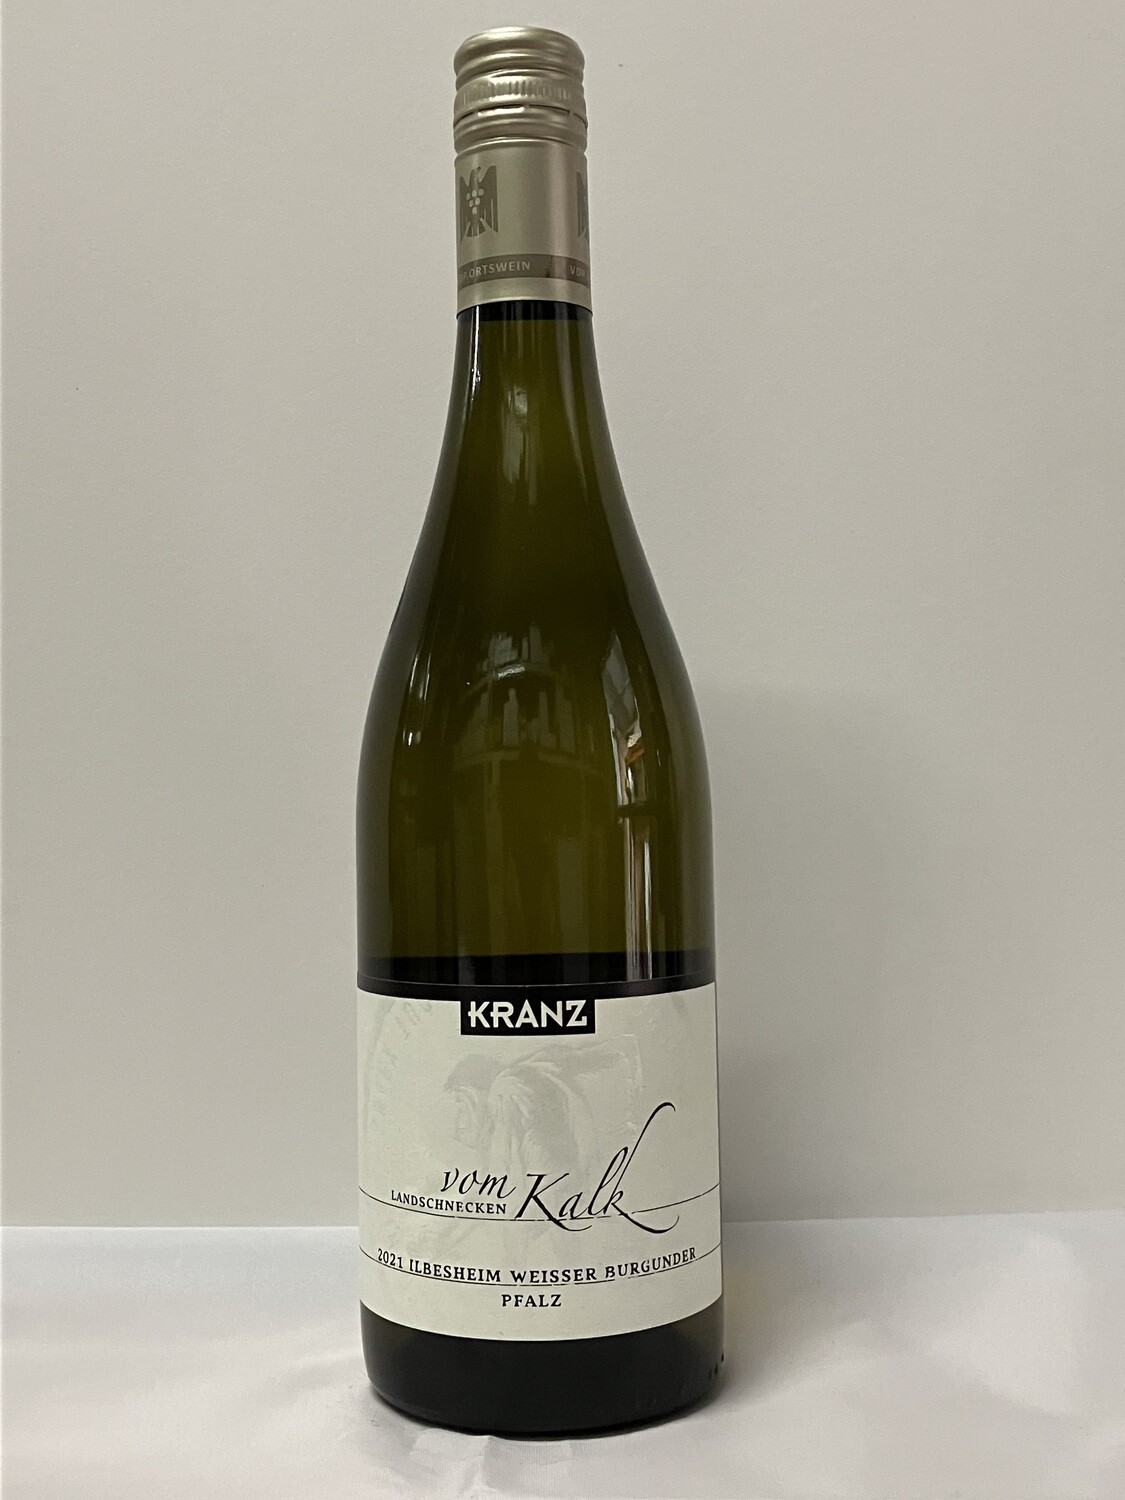 Pinot blanc 2021 droog Vom Landschneckenkalk Kranz (Pfalz)